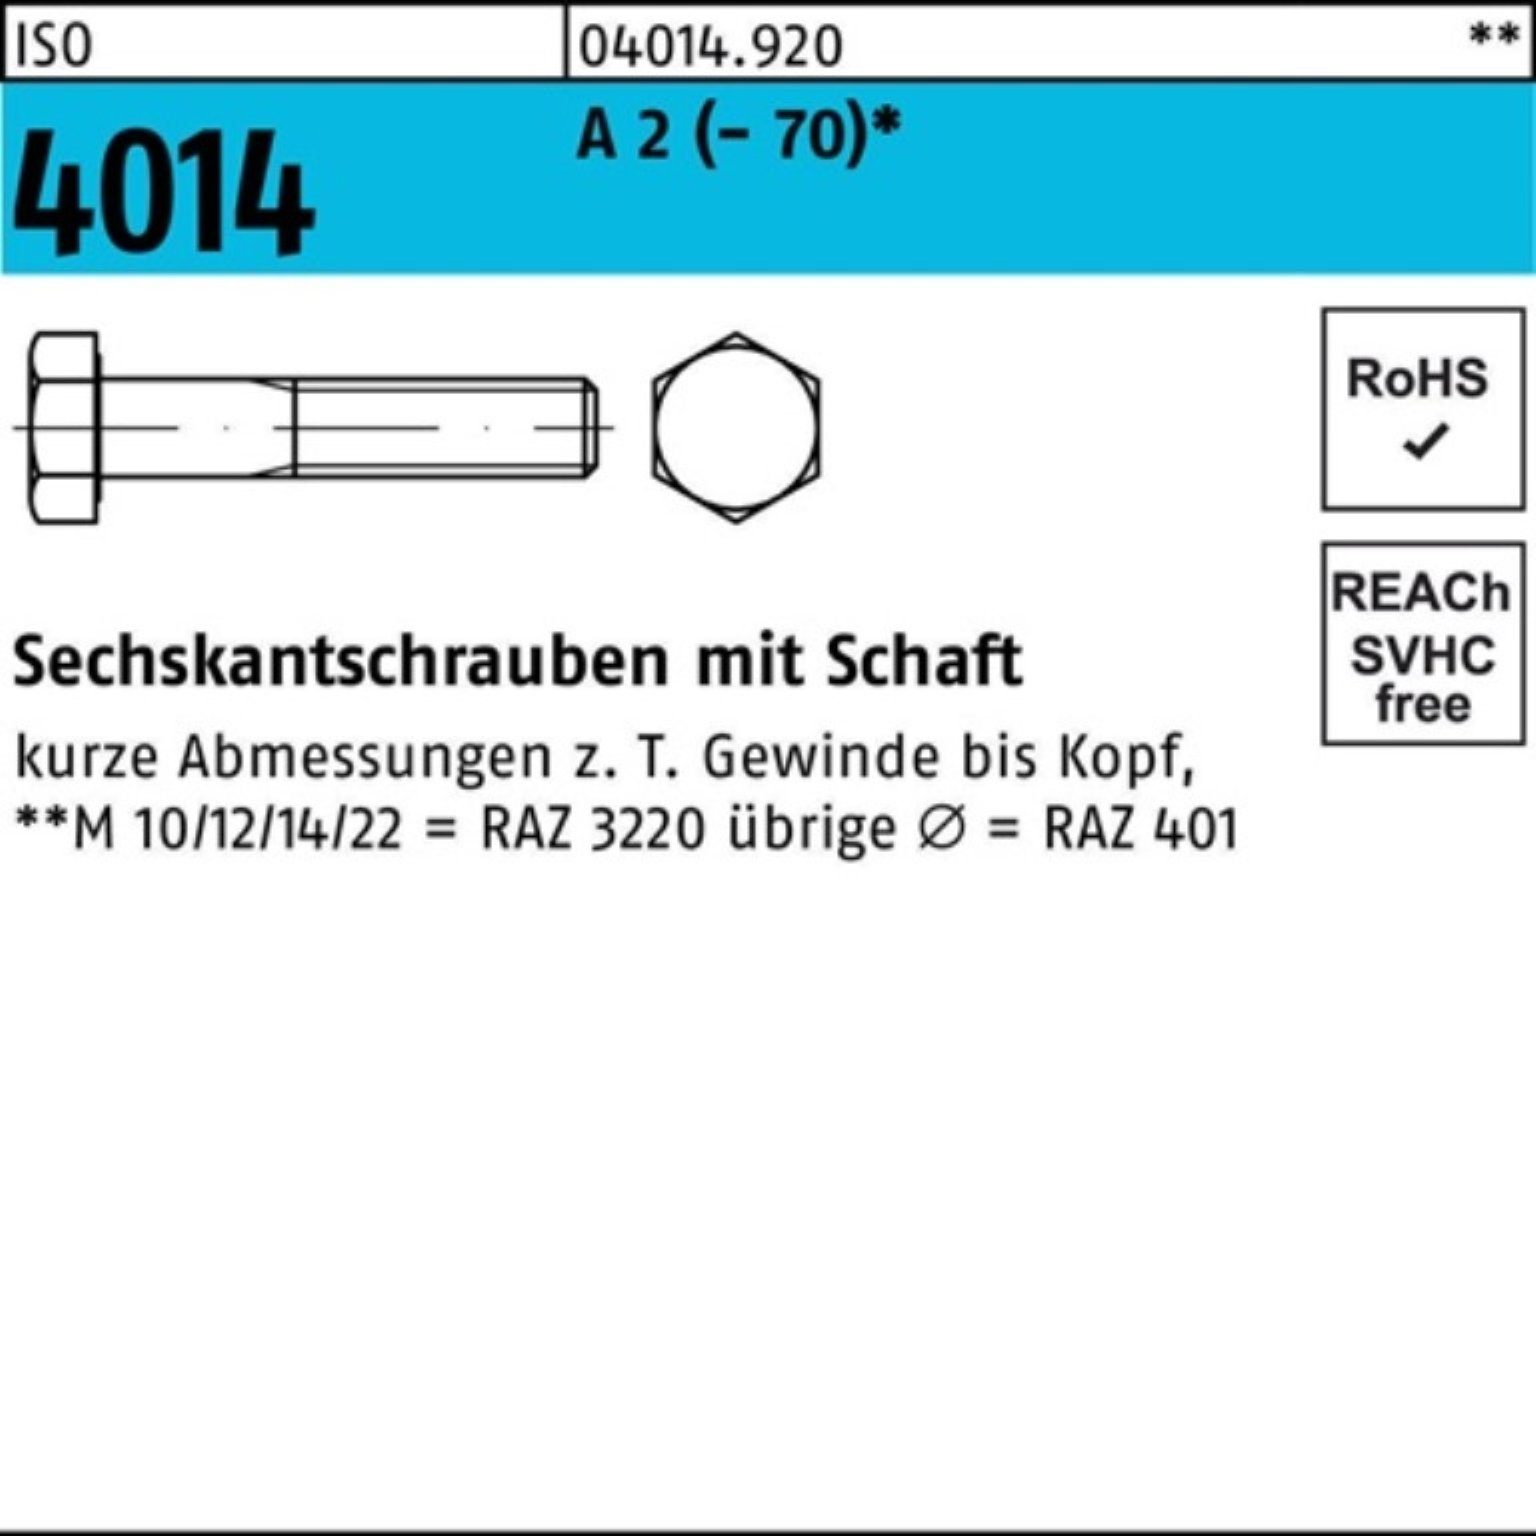 Sechskantschraube A St M16x 25 4014 (70) ISO Pack Sechskantschraube 100 100er Schaft 2 Bufab